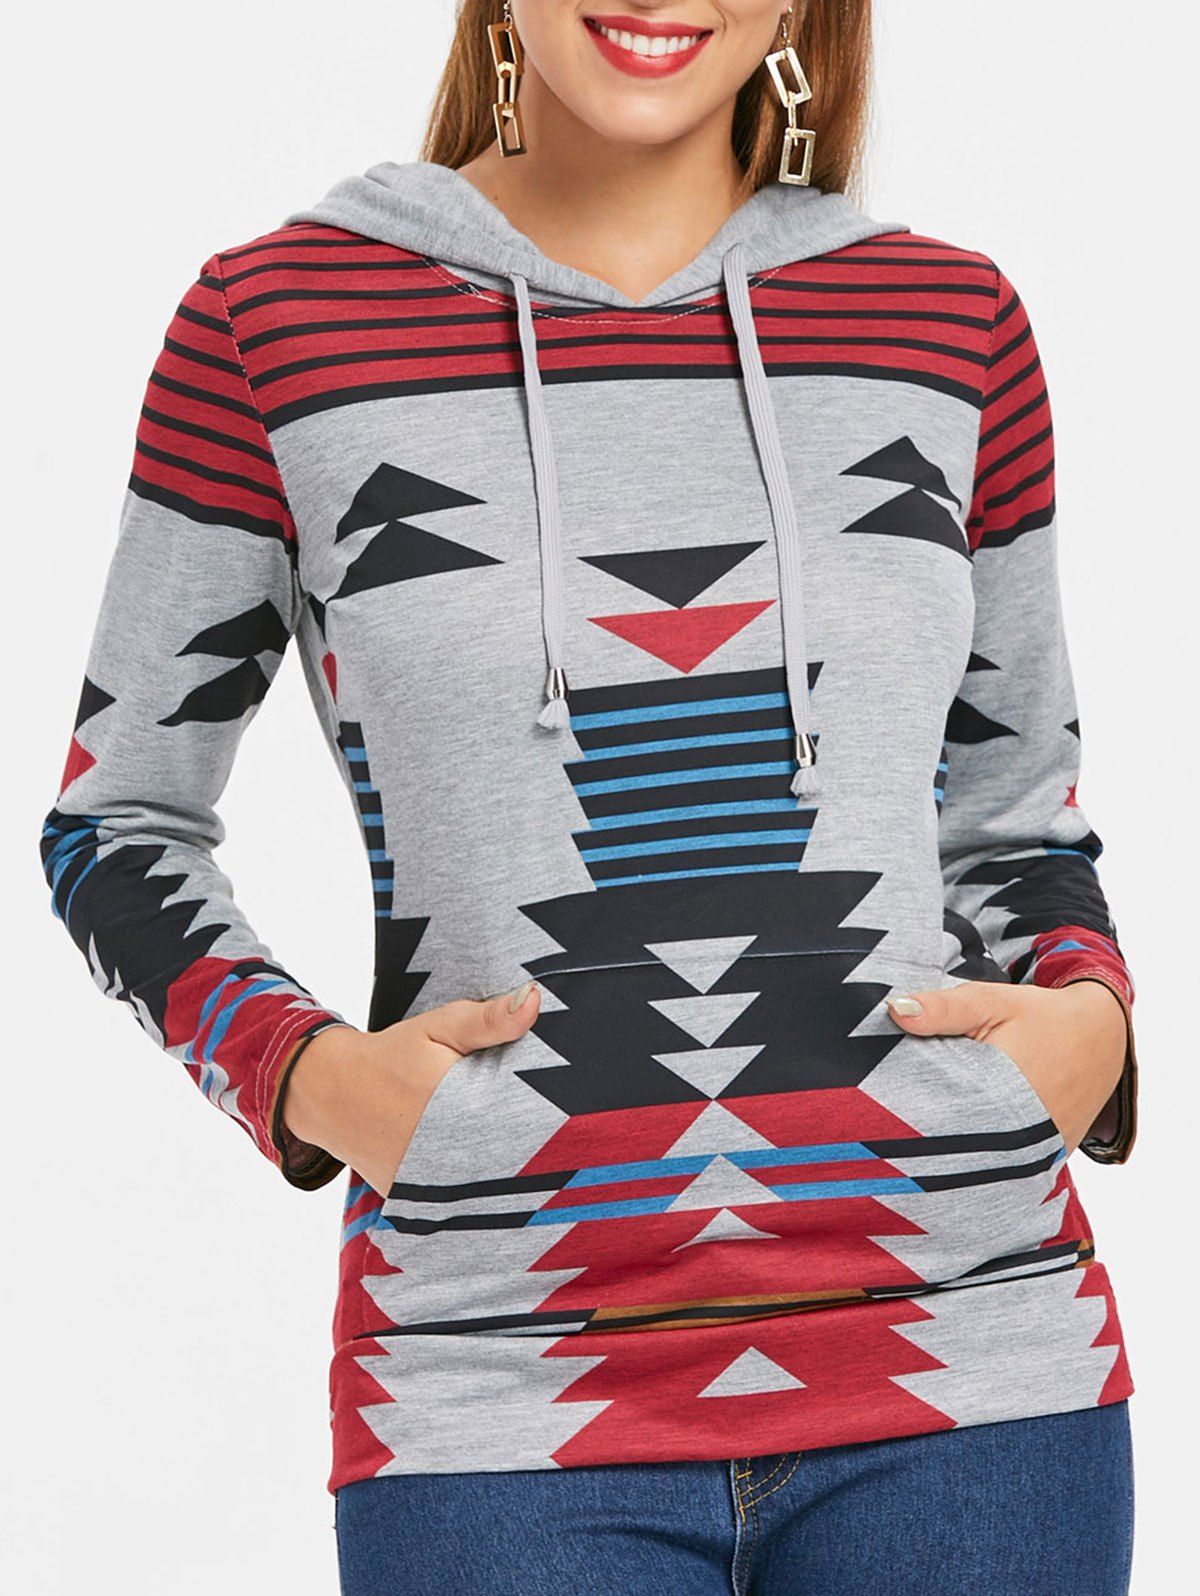 Casual Geometric Pattern Long Sleeves Women's Hoodie - GRAY M